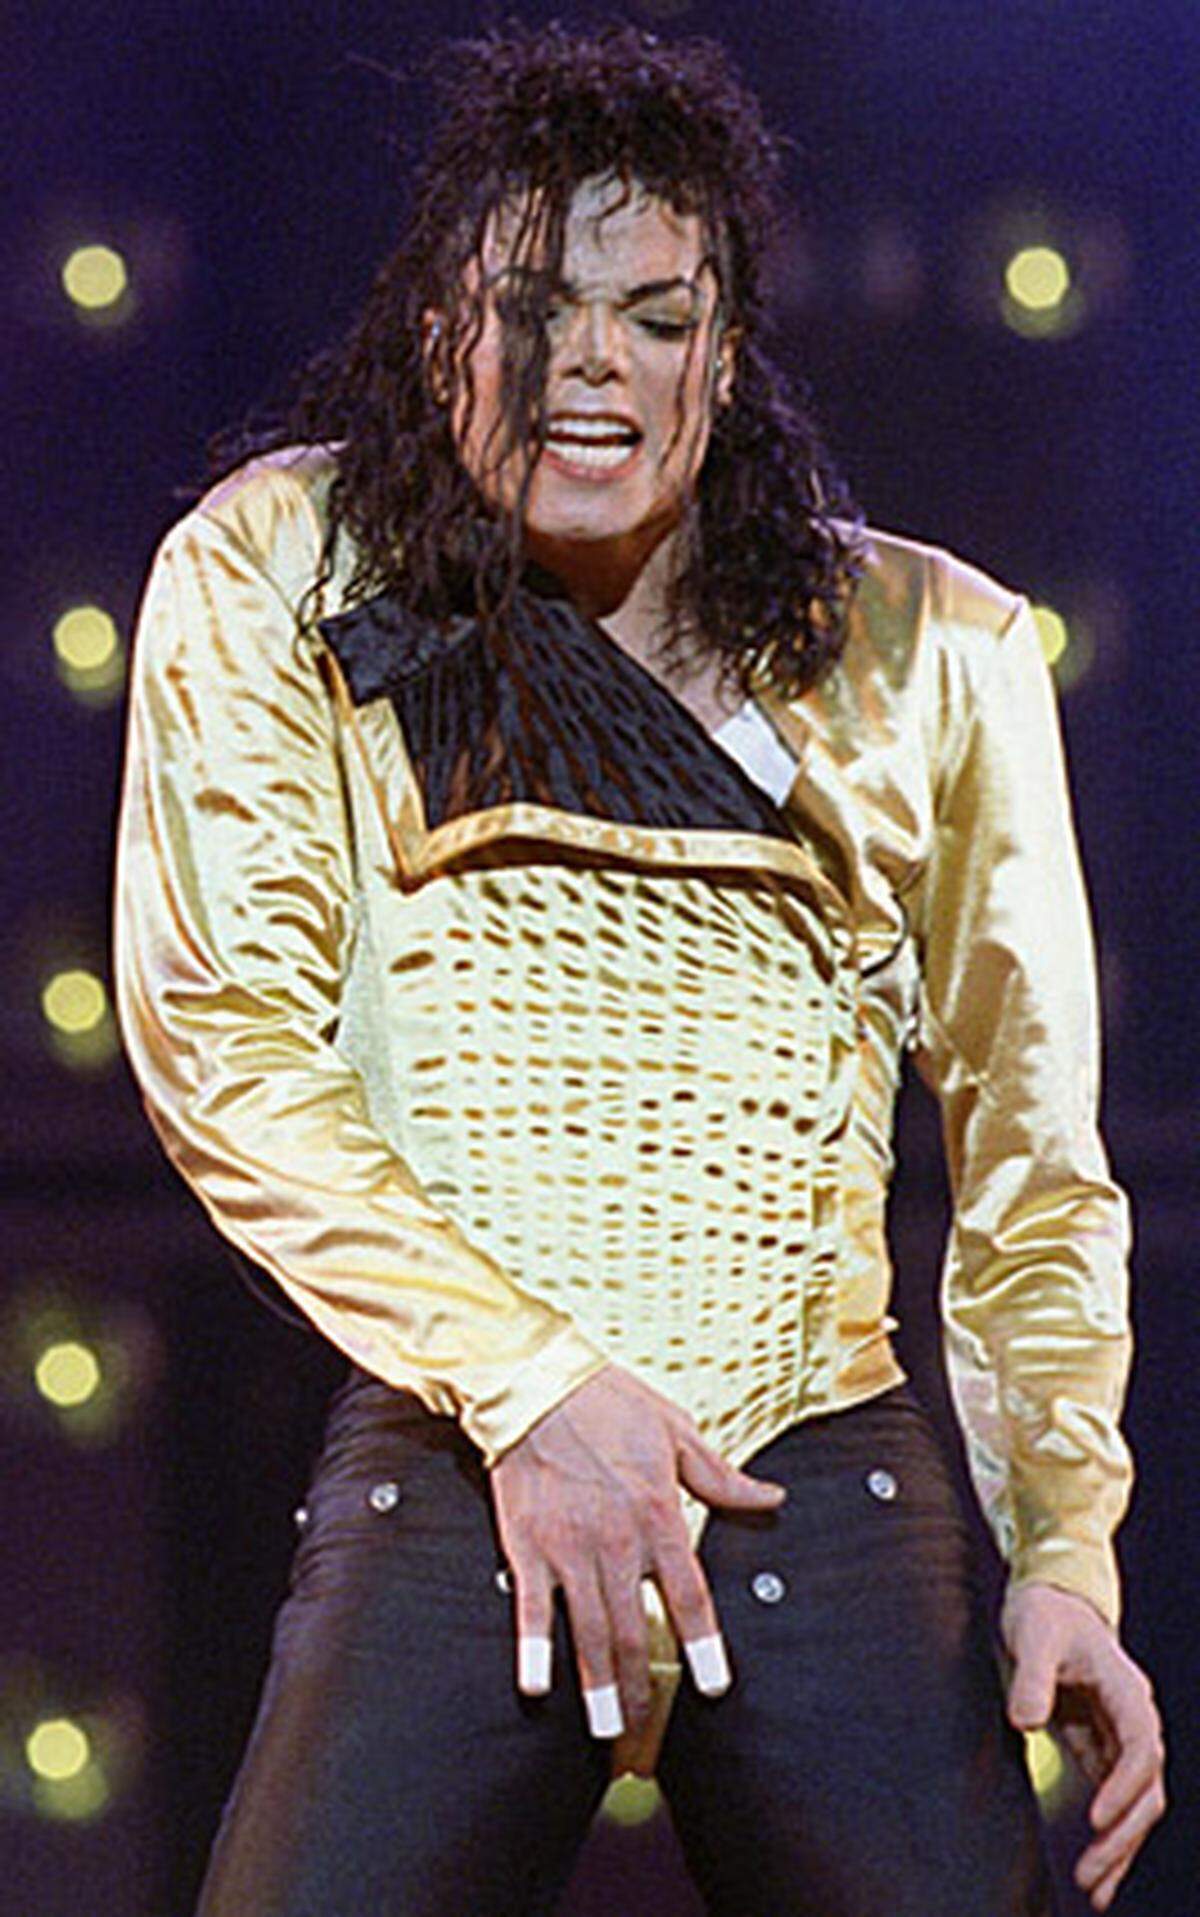 Der "King of Pop" stirbt nach einem Herzinfarkt in einem Krankenhaus in Los Angeles. Mitte Mai war der mit Spannung erwartete Auftakt von Jacksons geplanter Comeback-Tour in London vom 8. Juli auf den 13. Juli verschoben worden. Drei weitere der insgesamt 50 geplanten Shows sollten erst im März 2010 nachgeholt werden. Die Terminverschiebung habe organisatorische Gründe, hieß es damals.